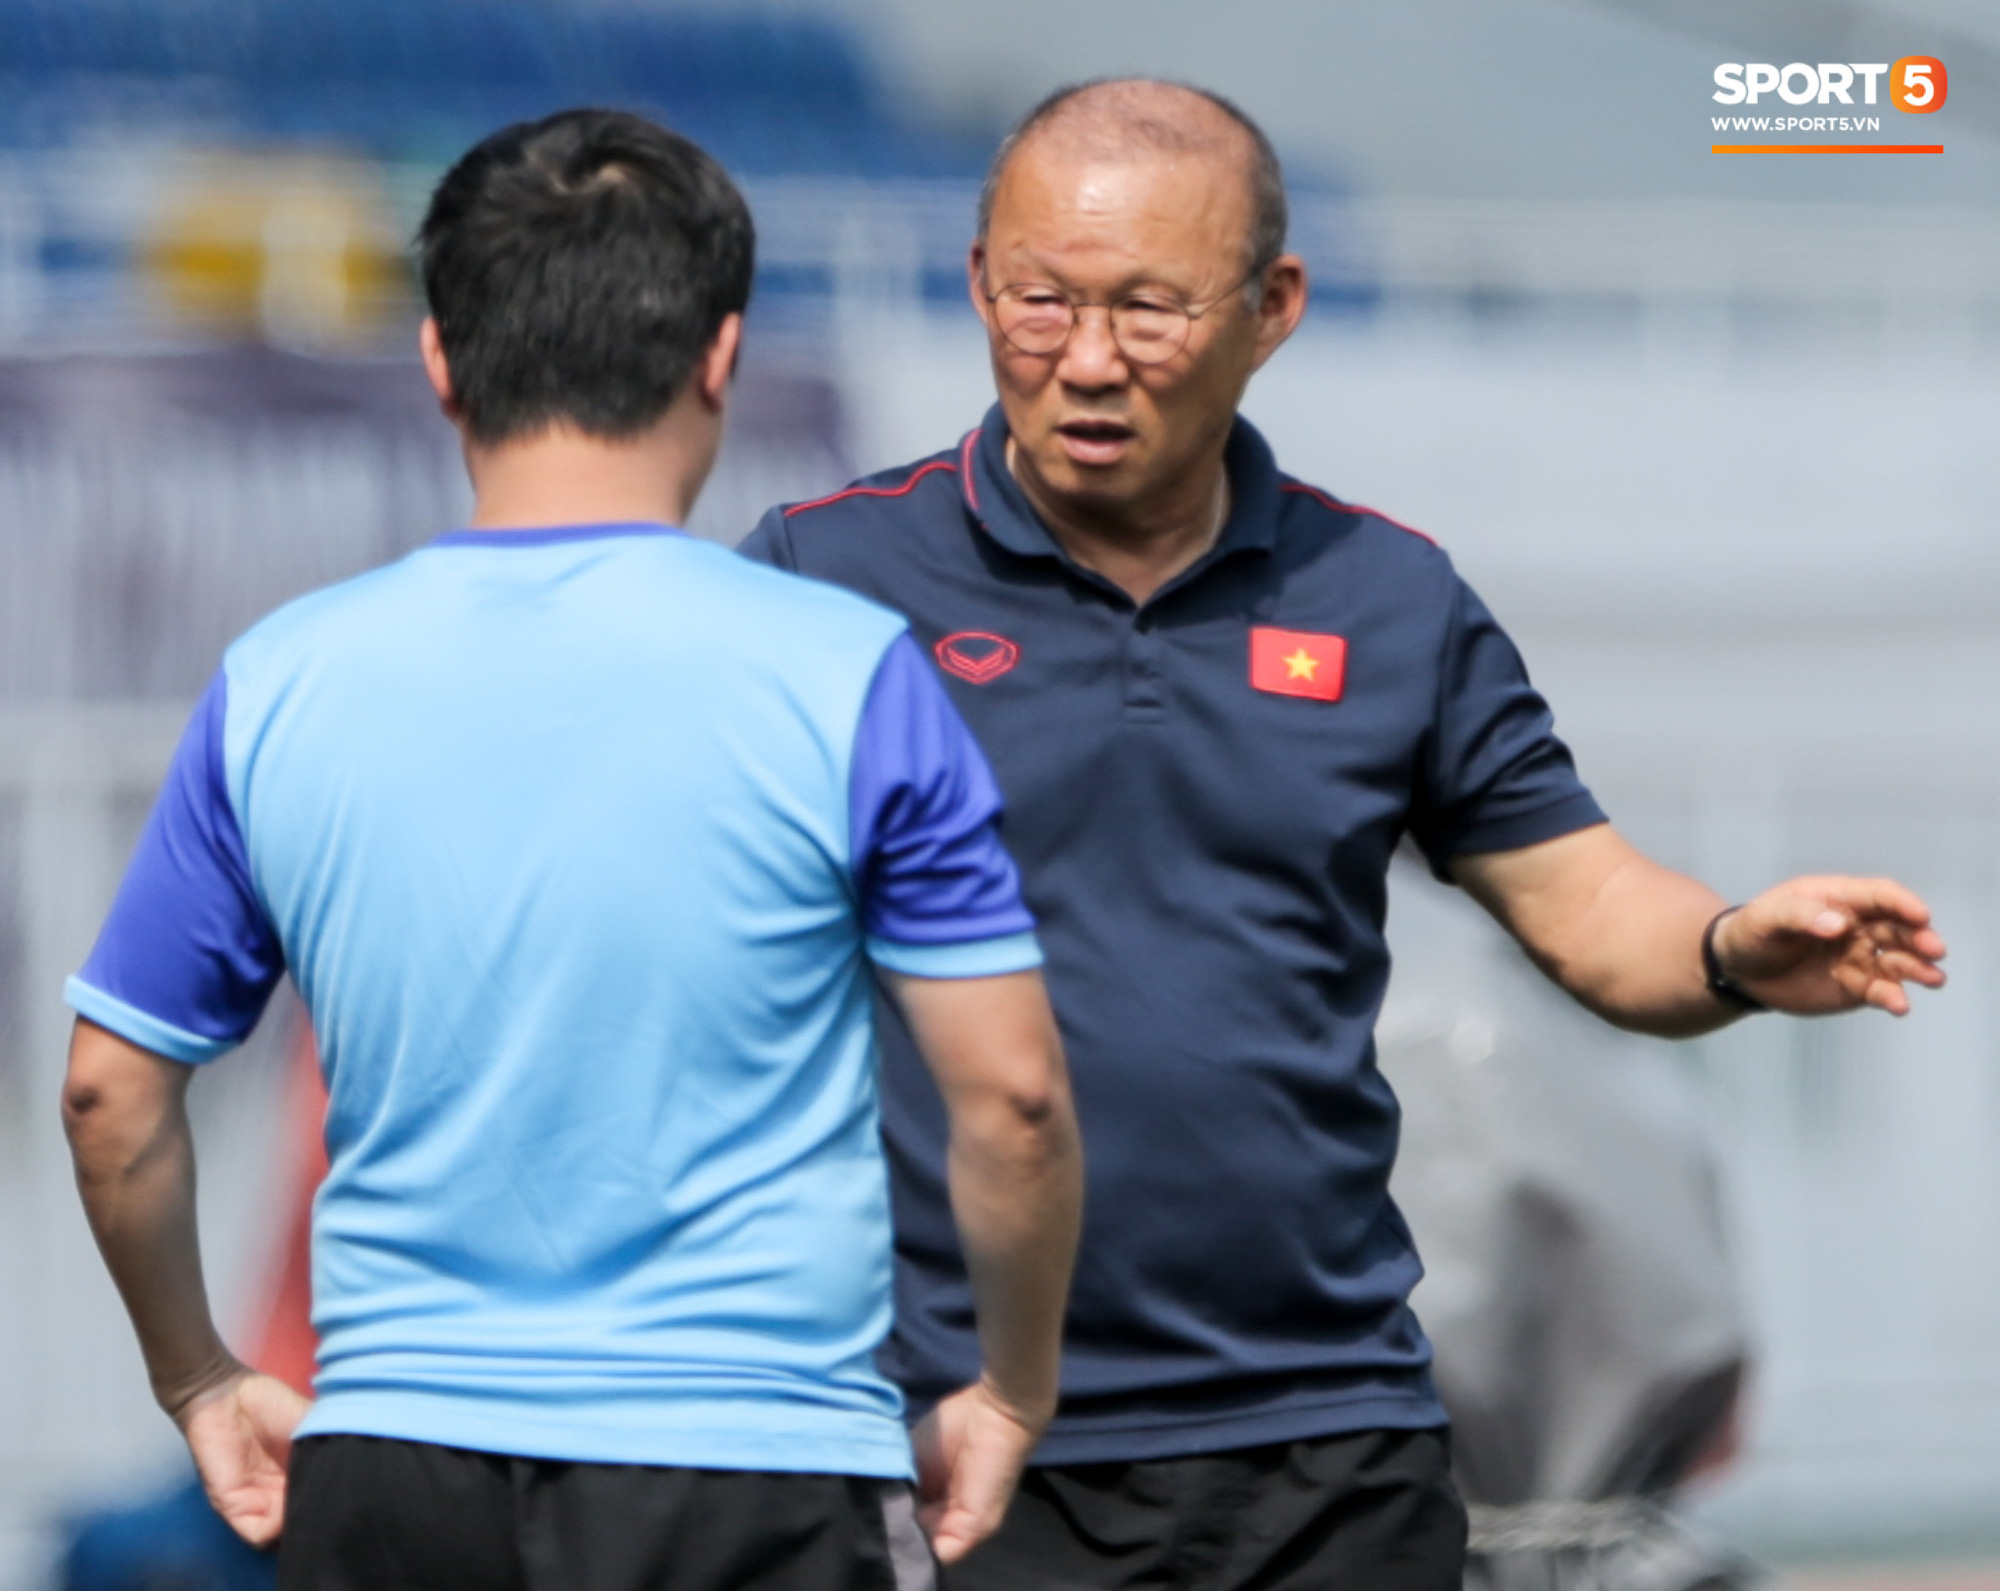 HLV Park Hang-seo giả lập tình huống sai lầm của Văn Toản ở trận gặp Thái Lan cho Bùi Tiến Dũng tập luyện - Ảnh 8.